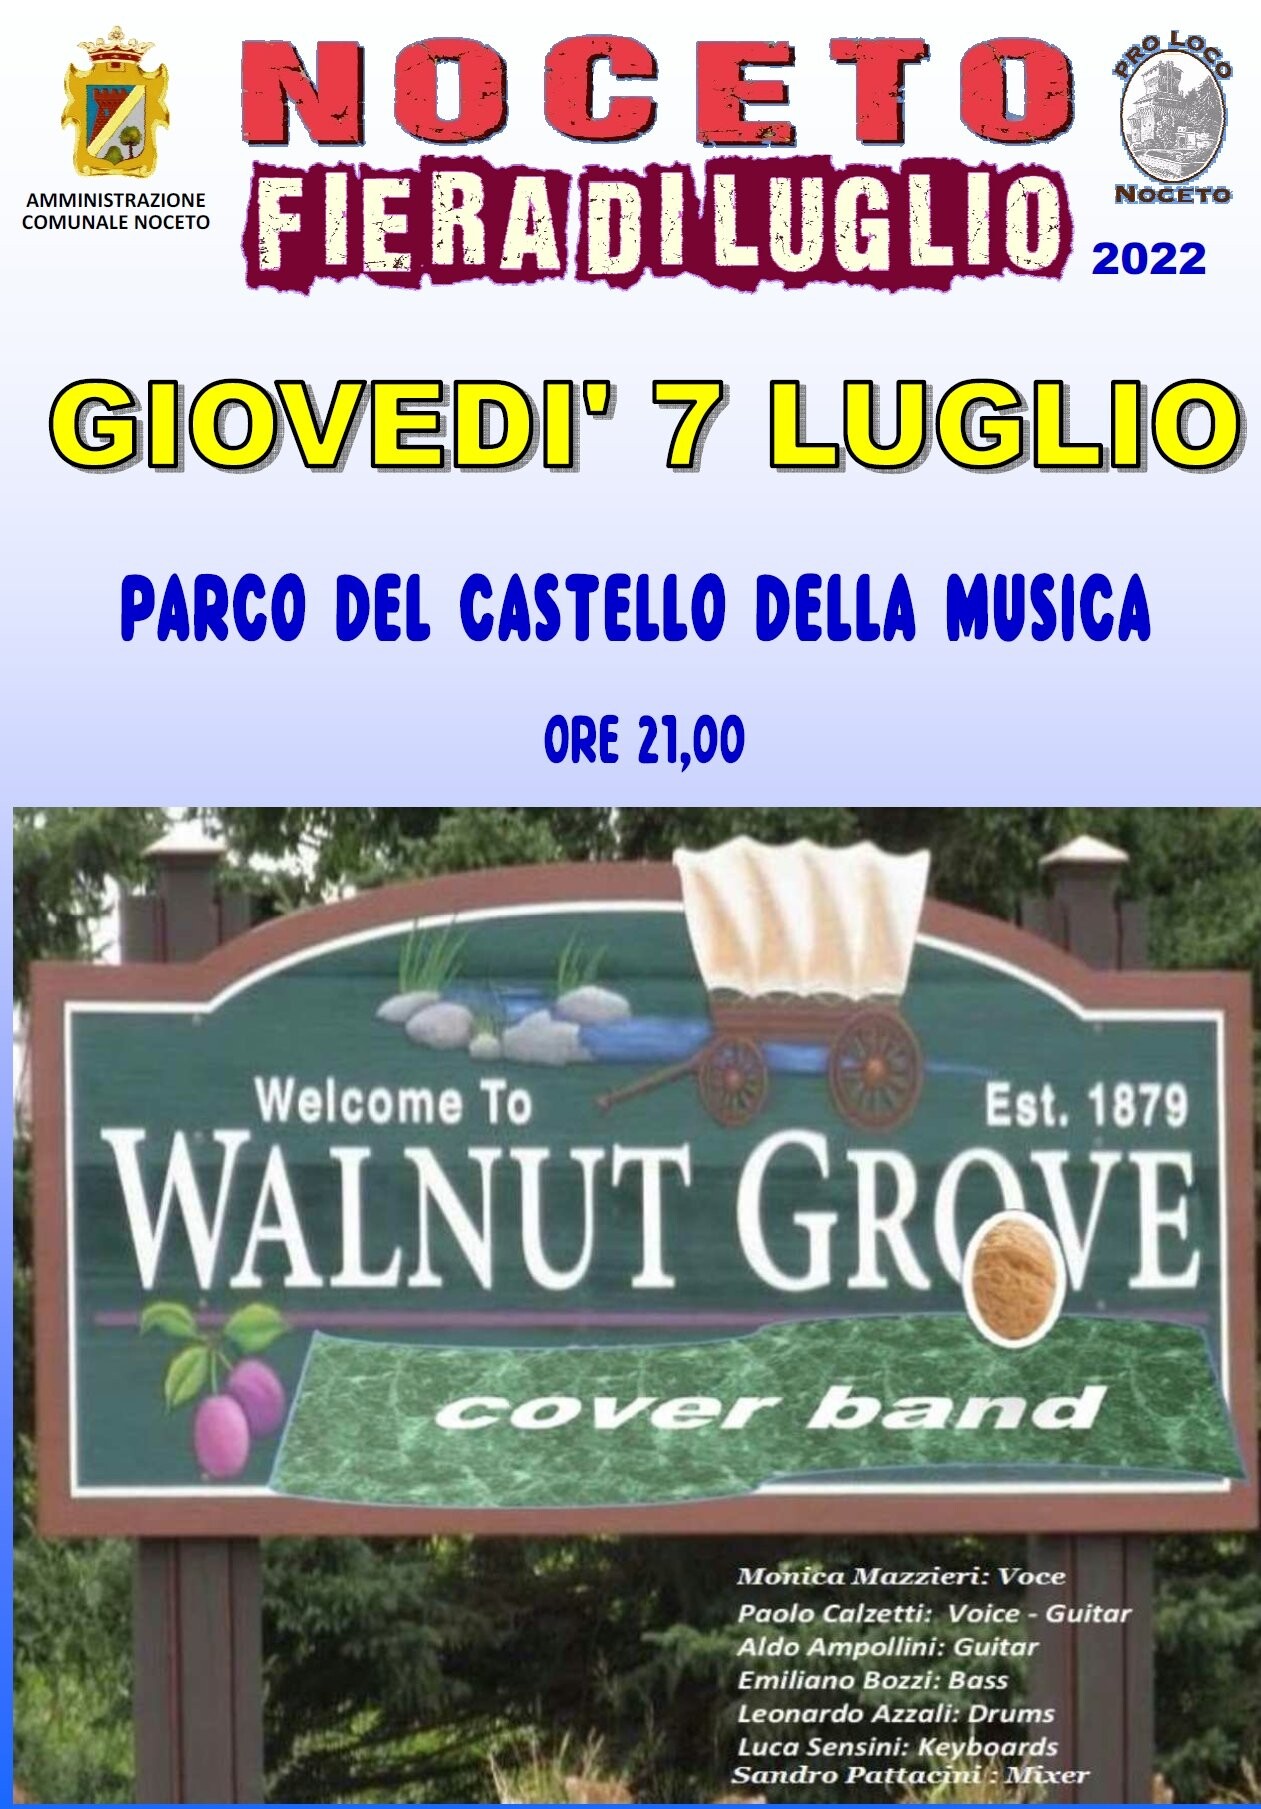 Noceto fiera di luglio: concerto dei Walnut Grove cover band